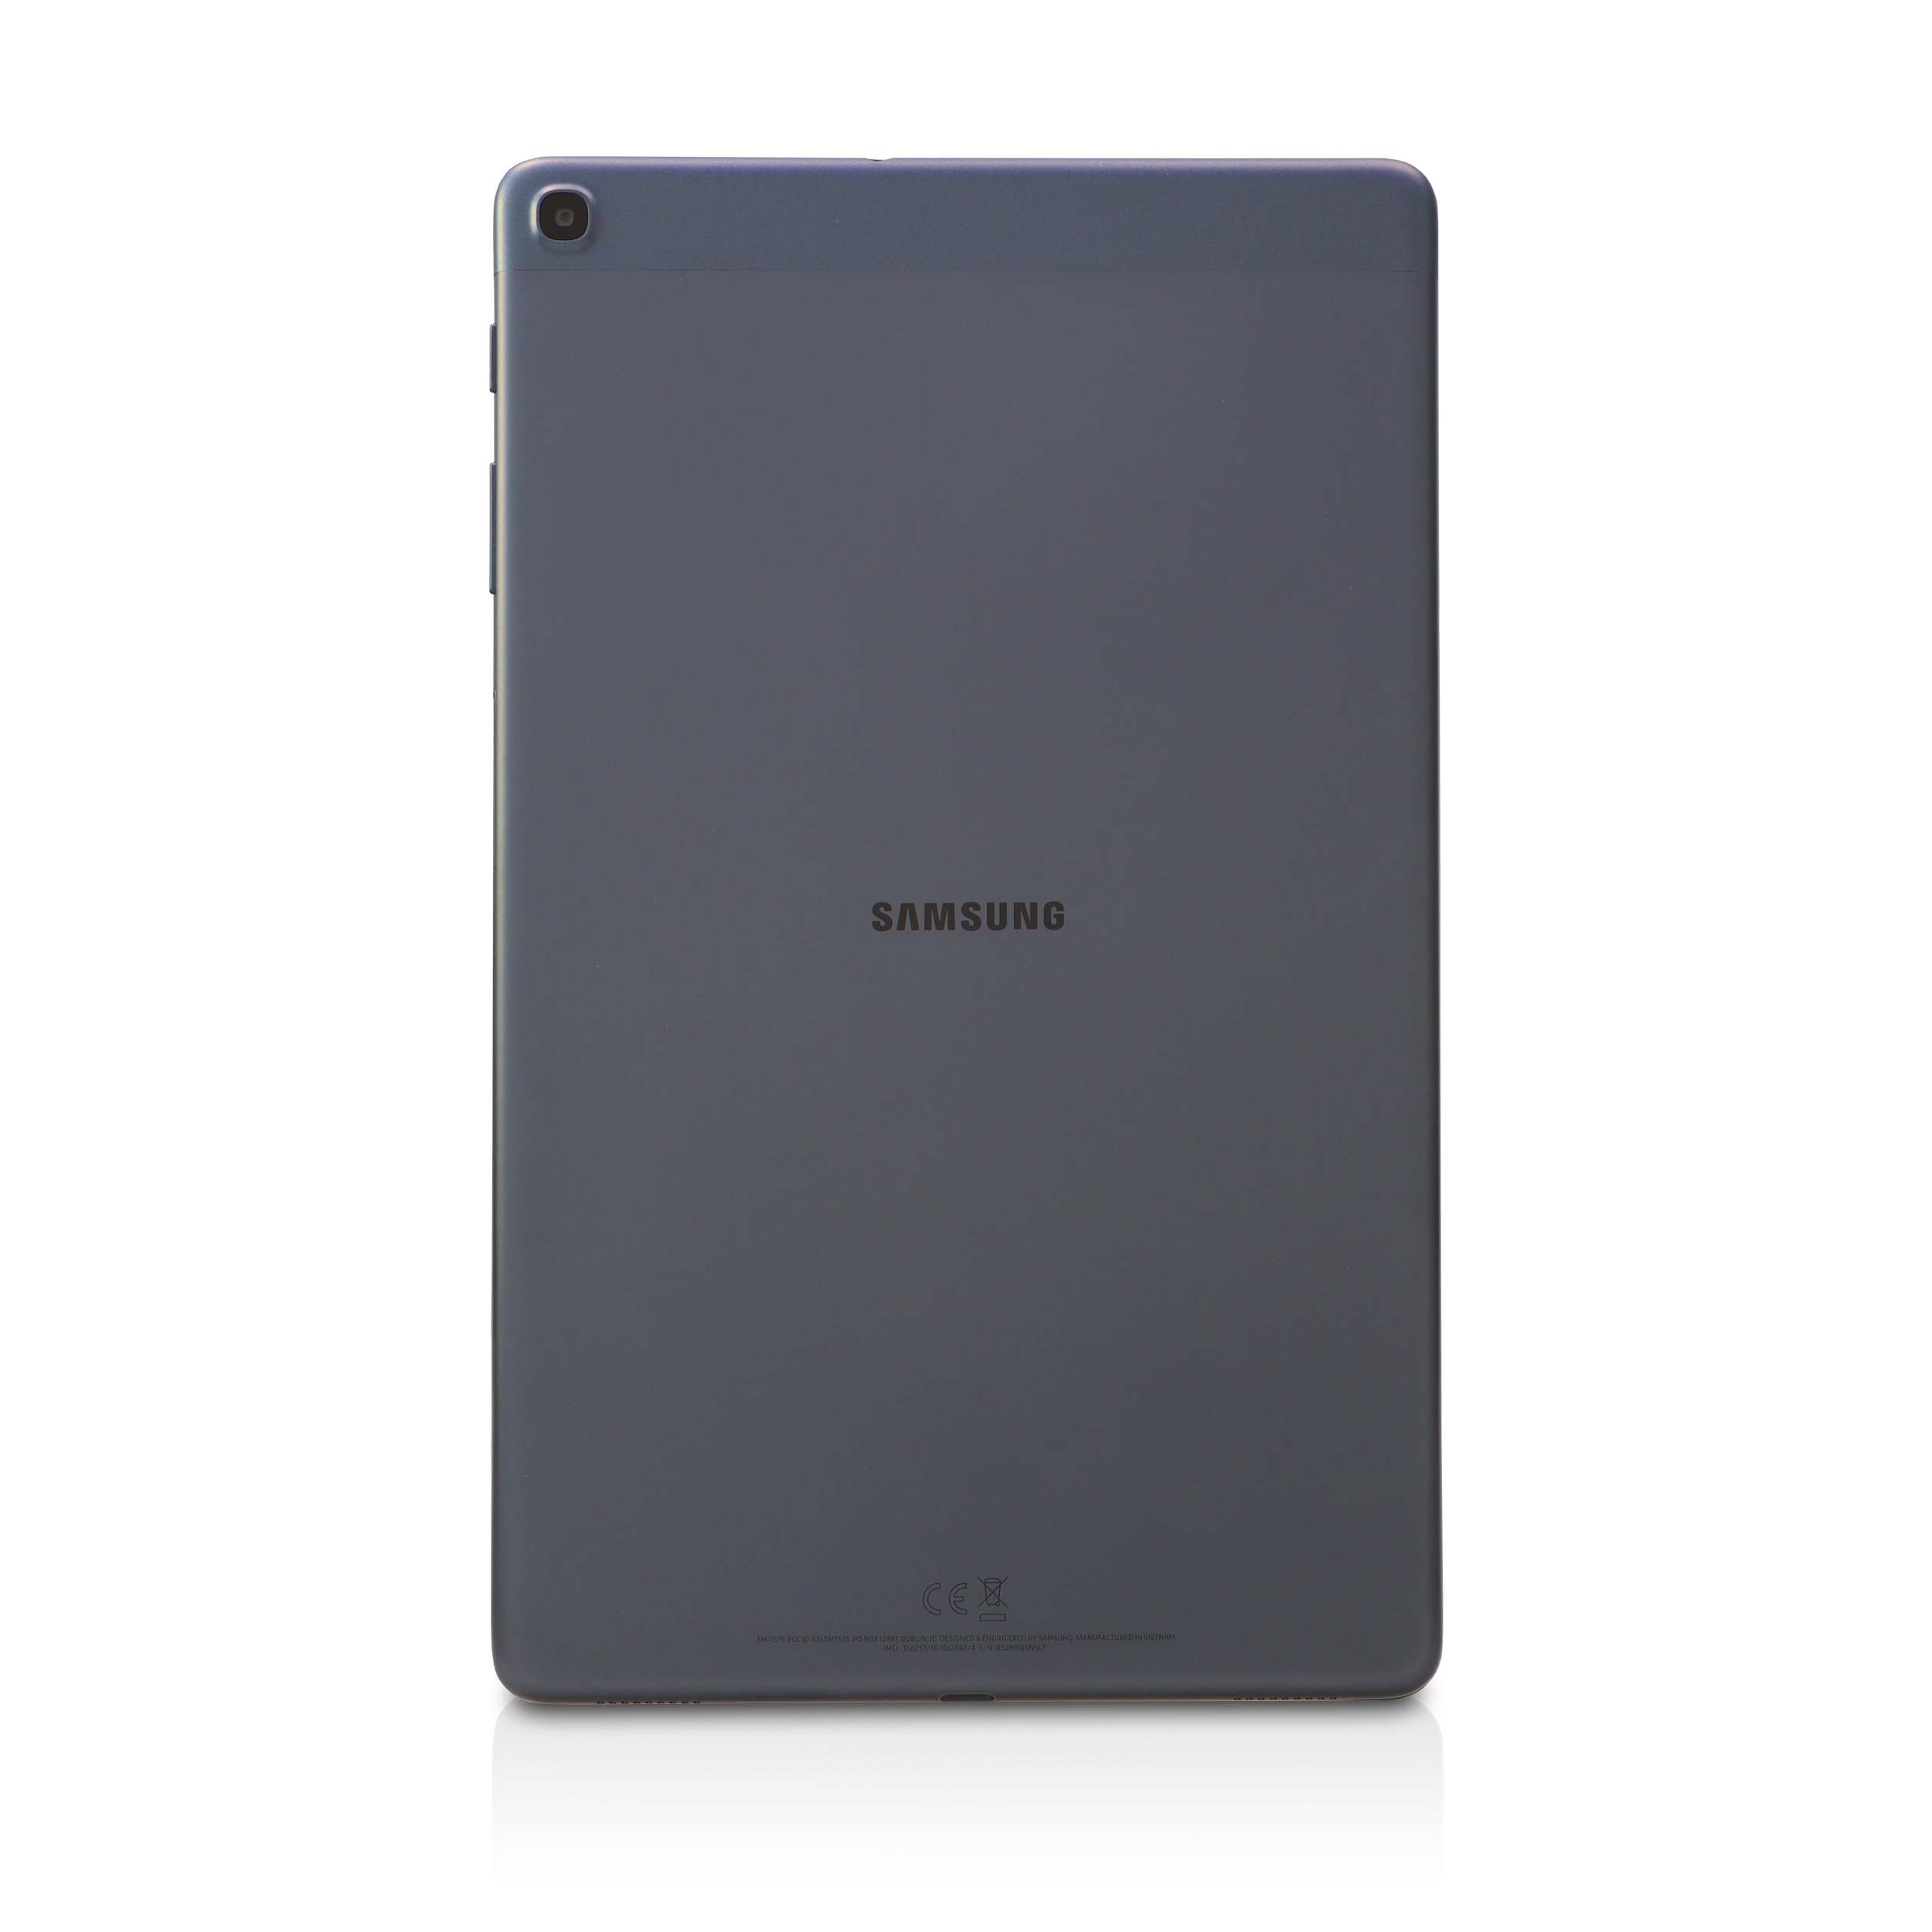 Samsung - Galaxy Tab A 10.1 2019 LTE